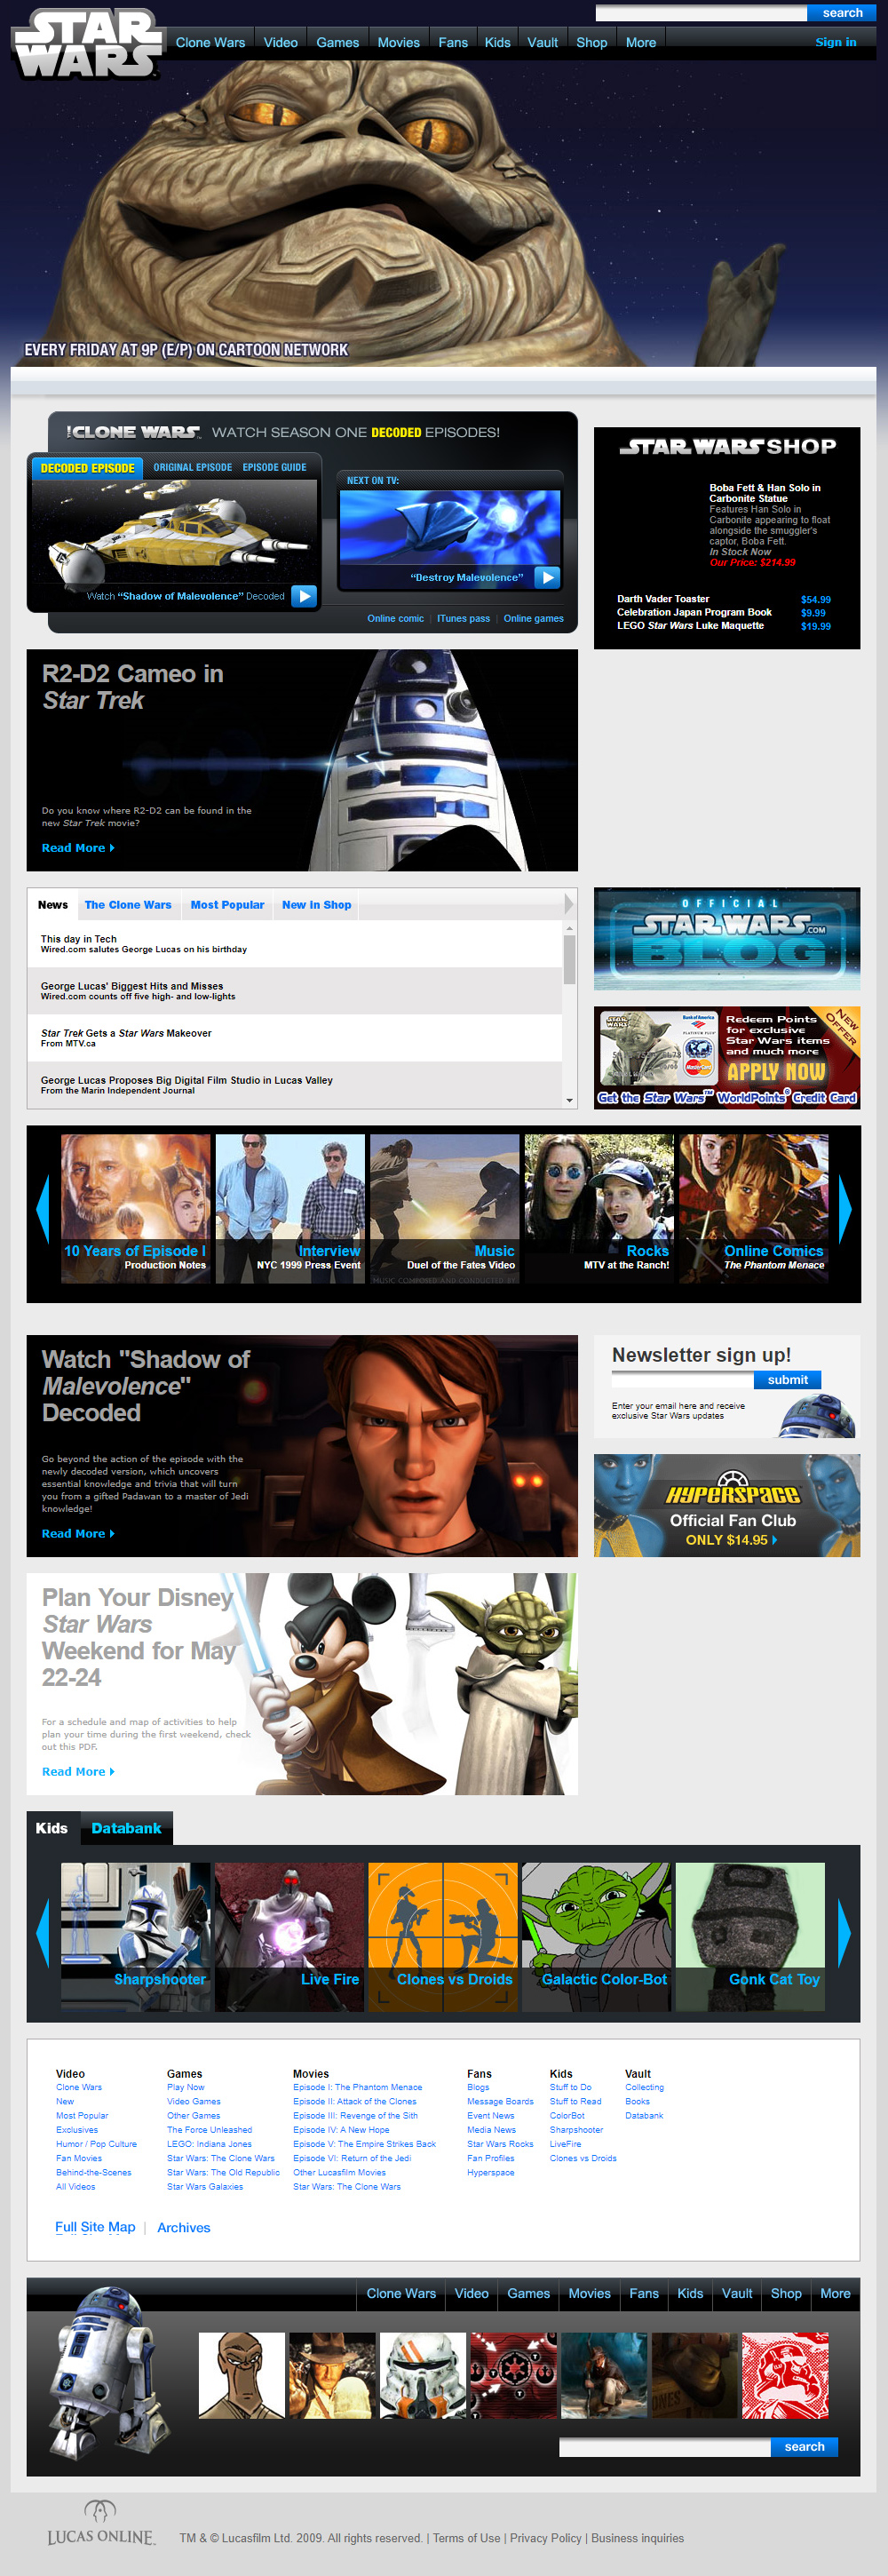 Star Wars website in 2009